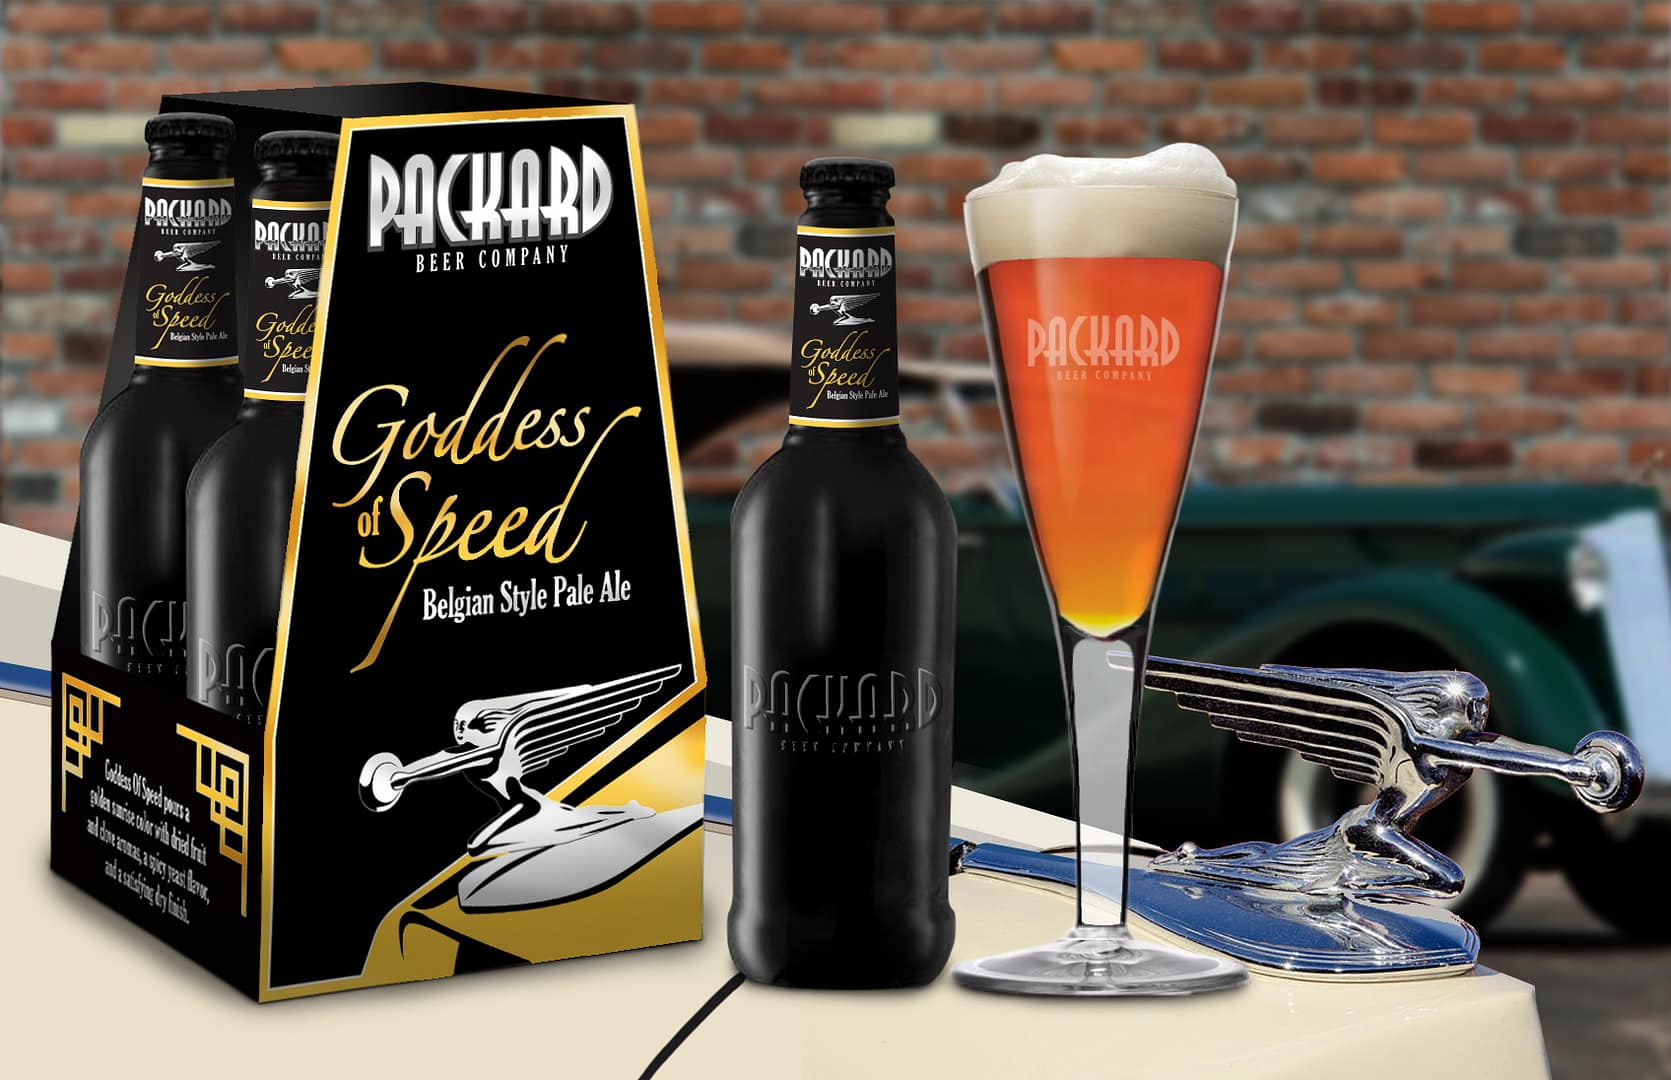 Packard Beer Company - Packaging